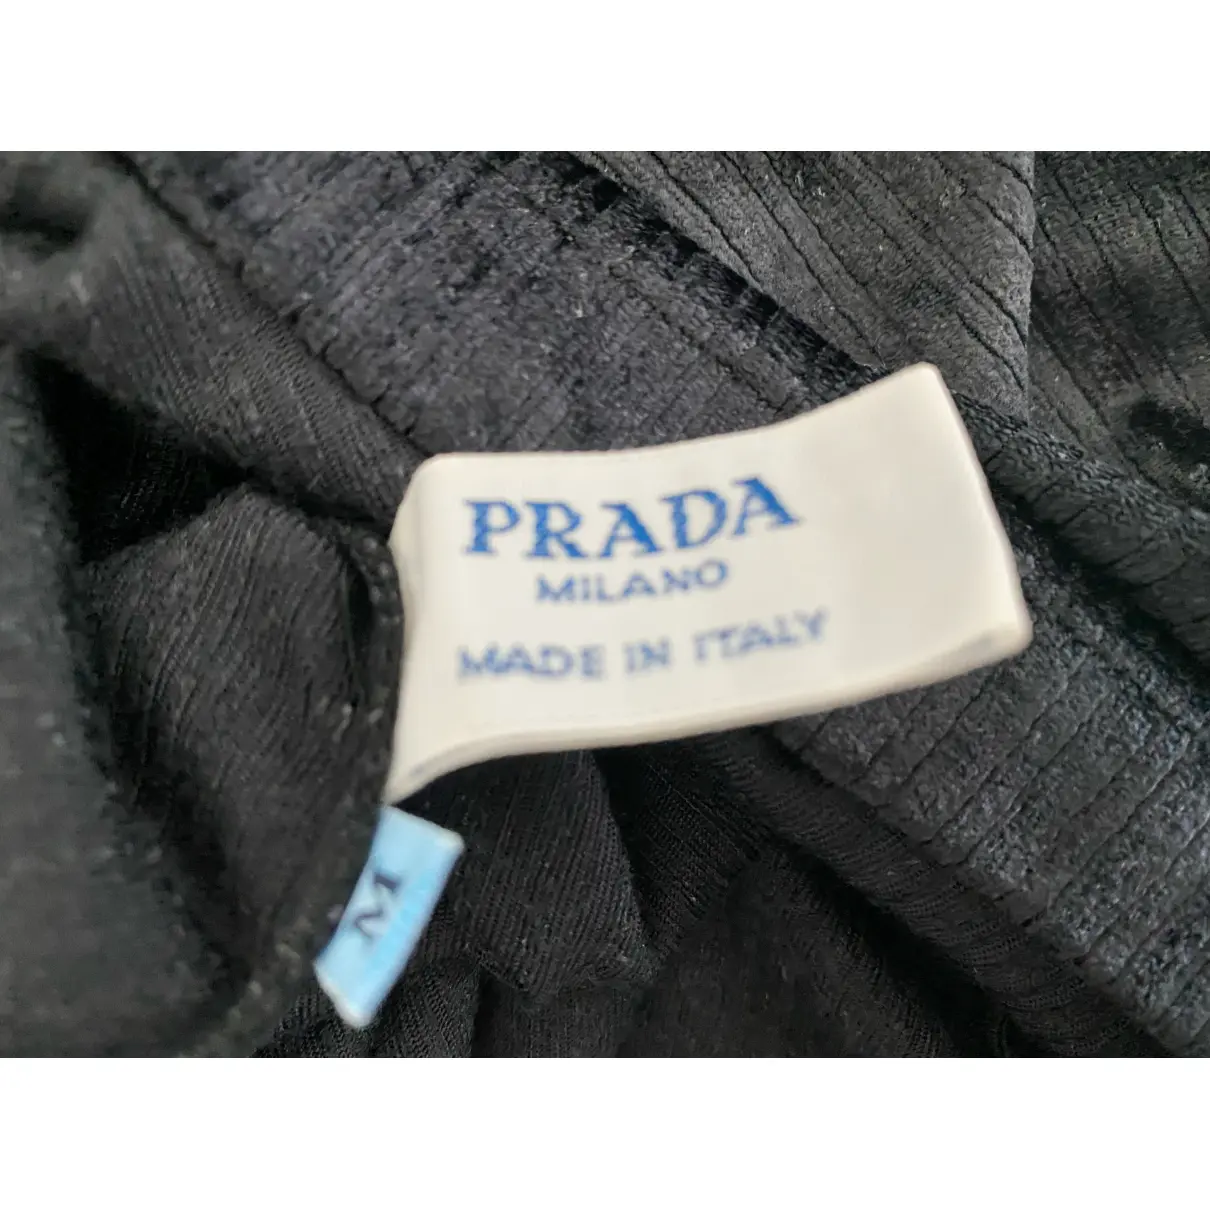 Buy Prada T-shirt online